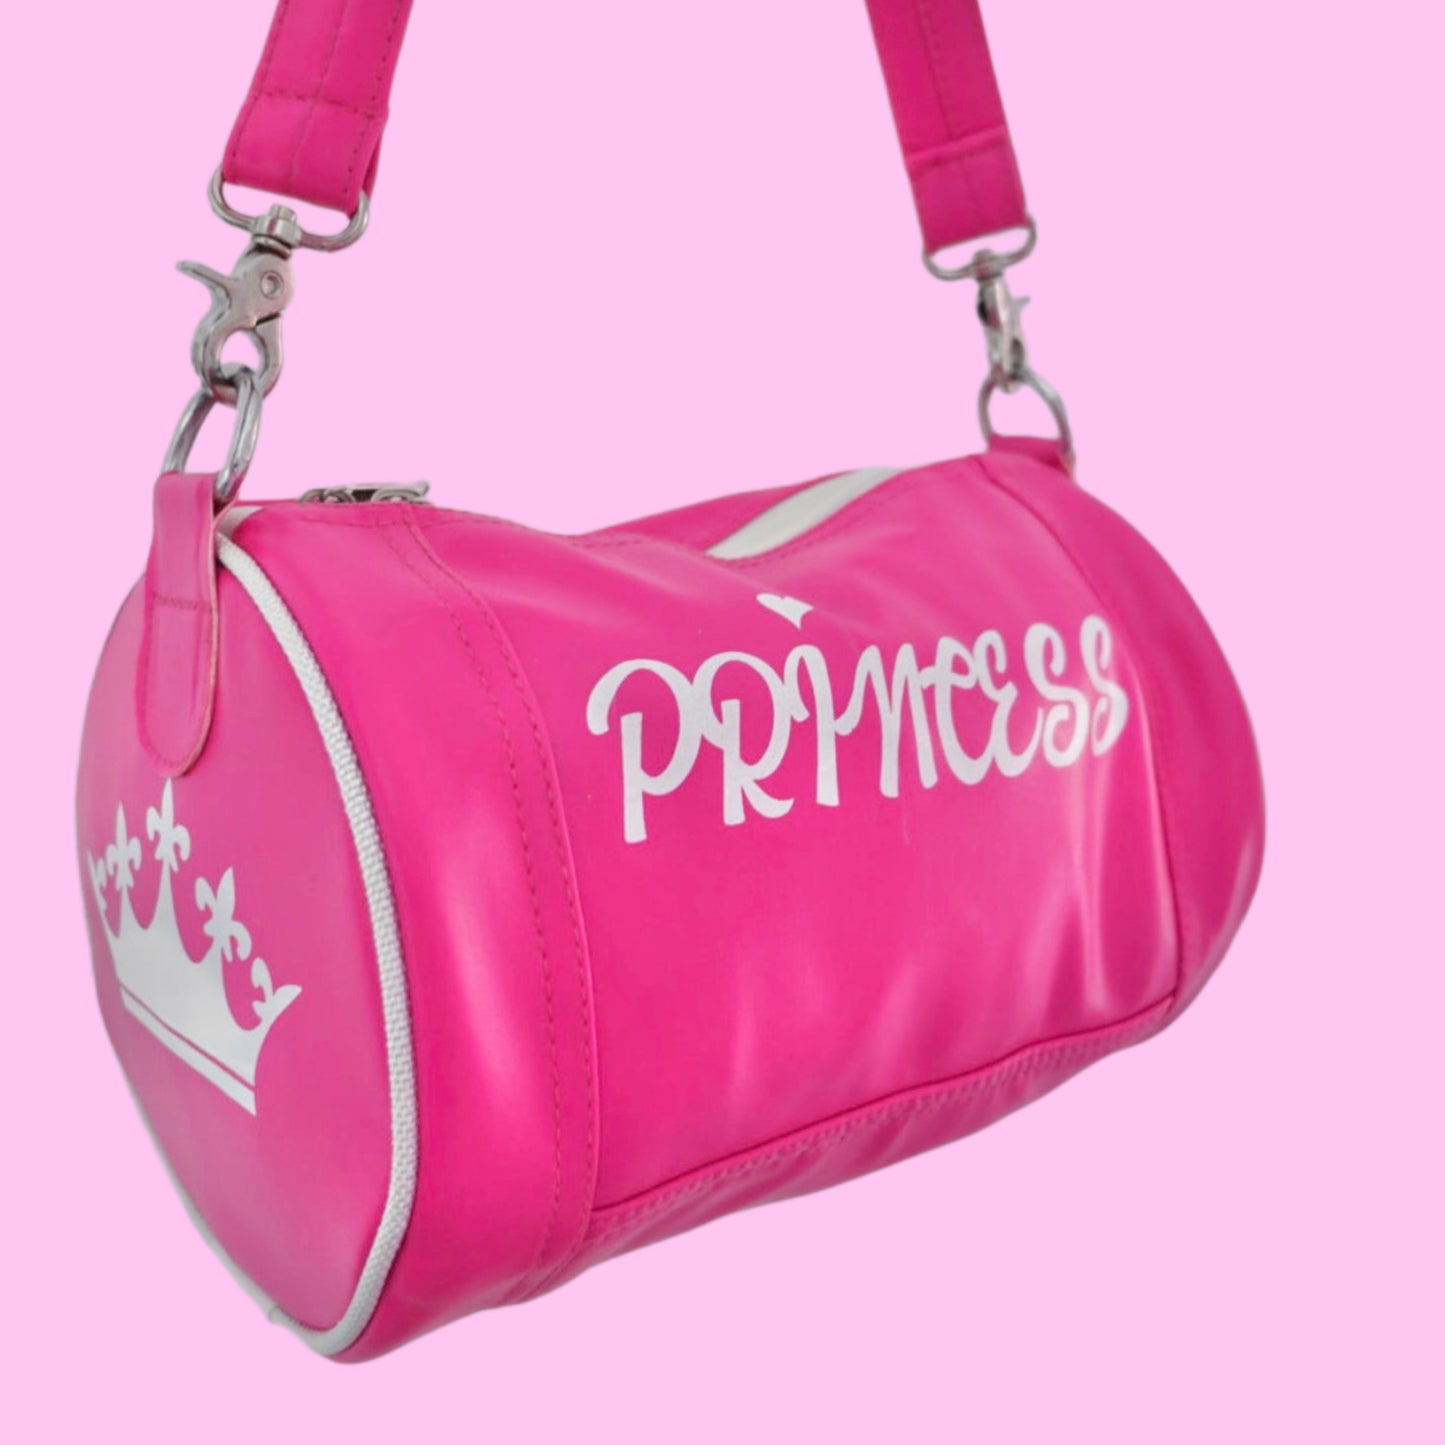 Princess bag